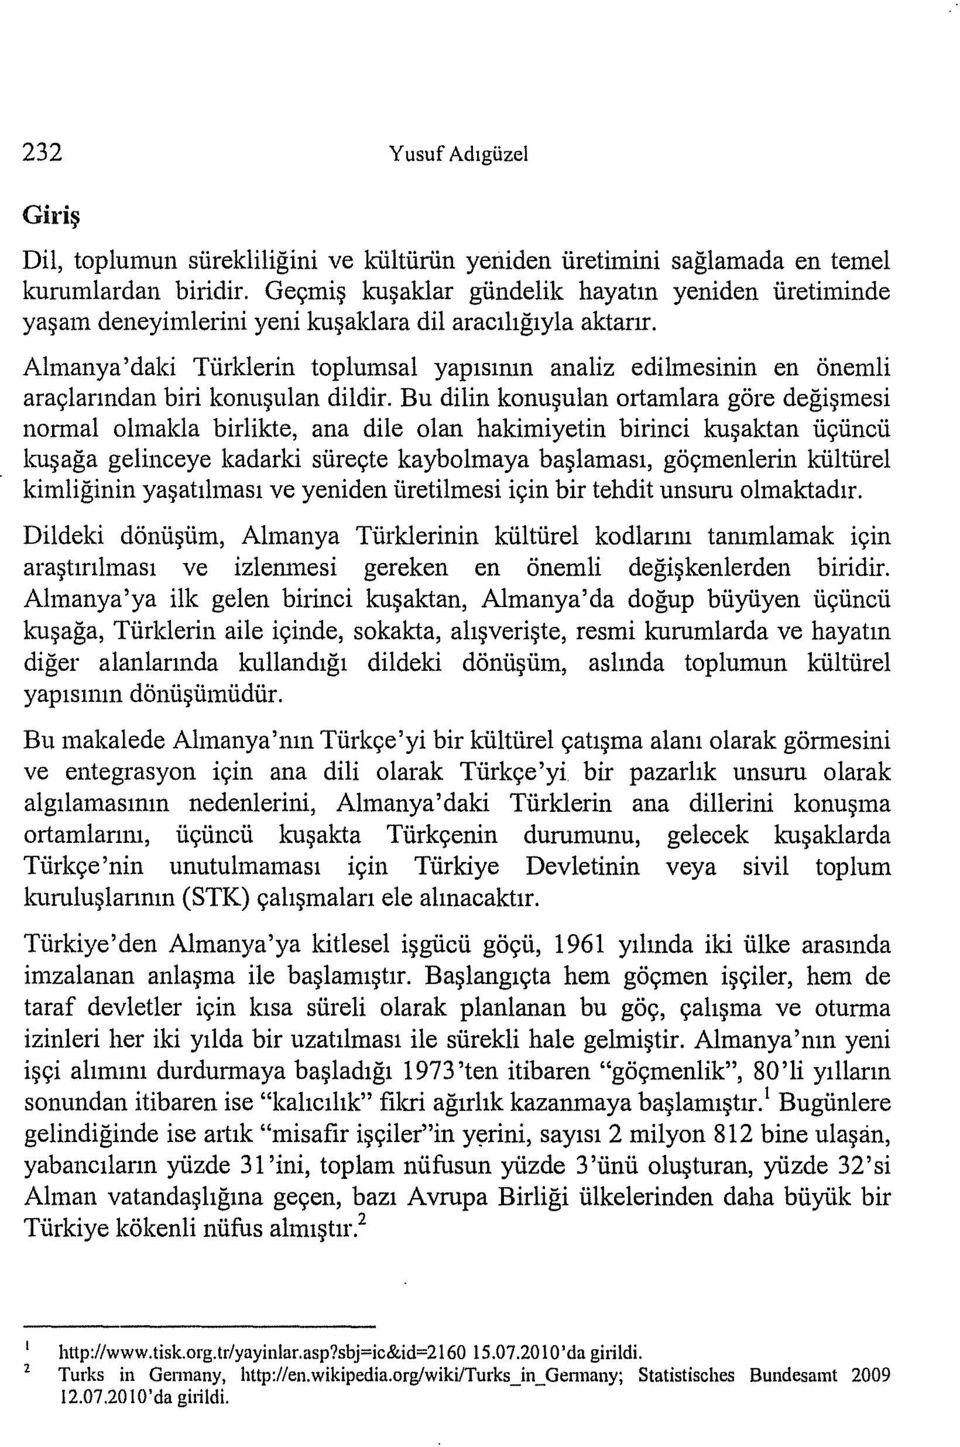 Almanya' daki Türklerin toplumsal yapısının analiz edilmesinin en önemli araçlarından biri konuşulan dildir.